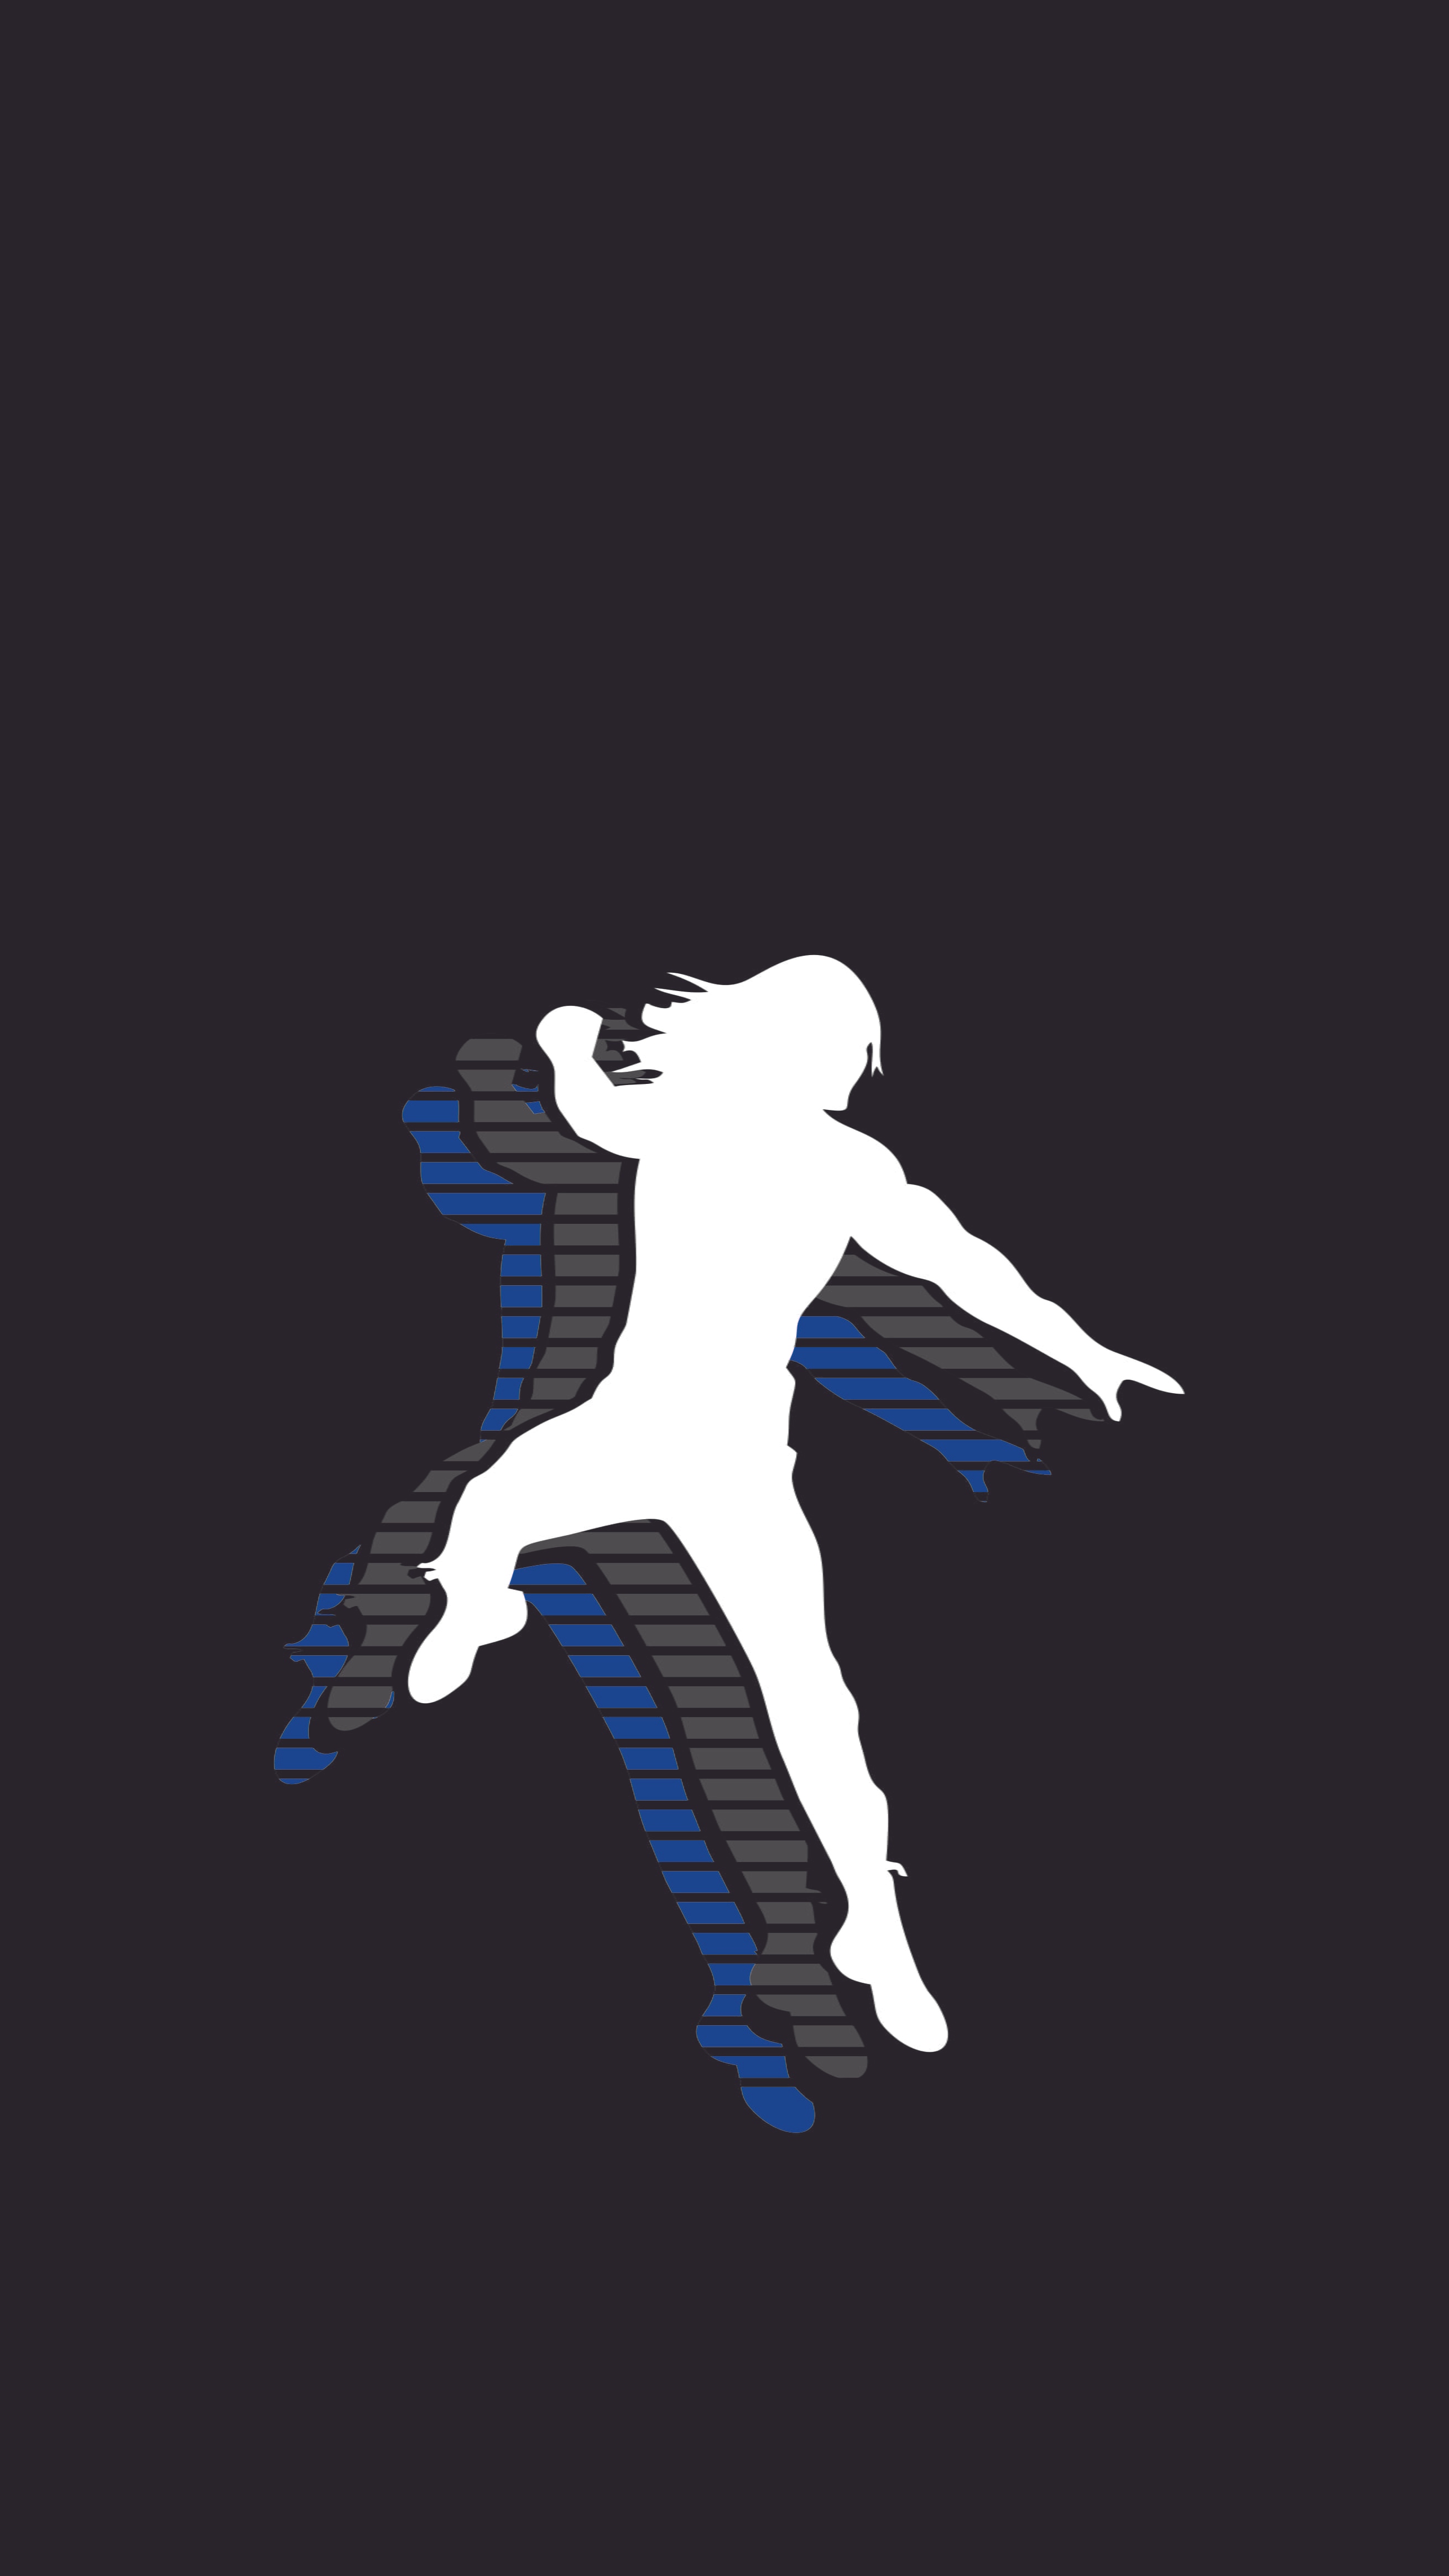 Roman Reigns Photo - logo